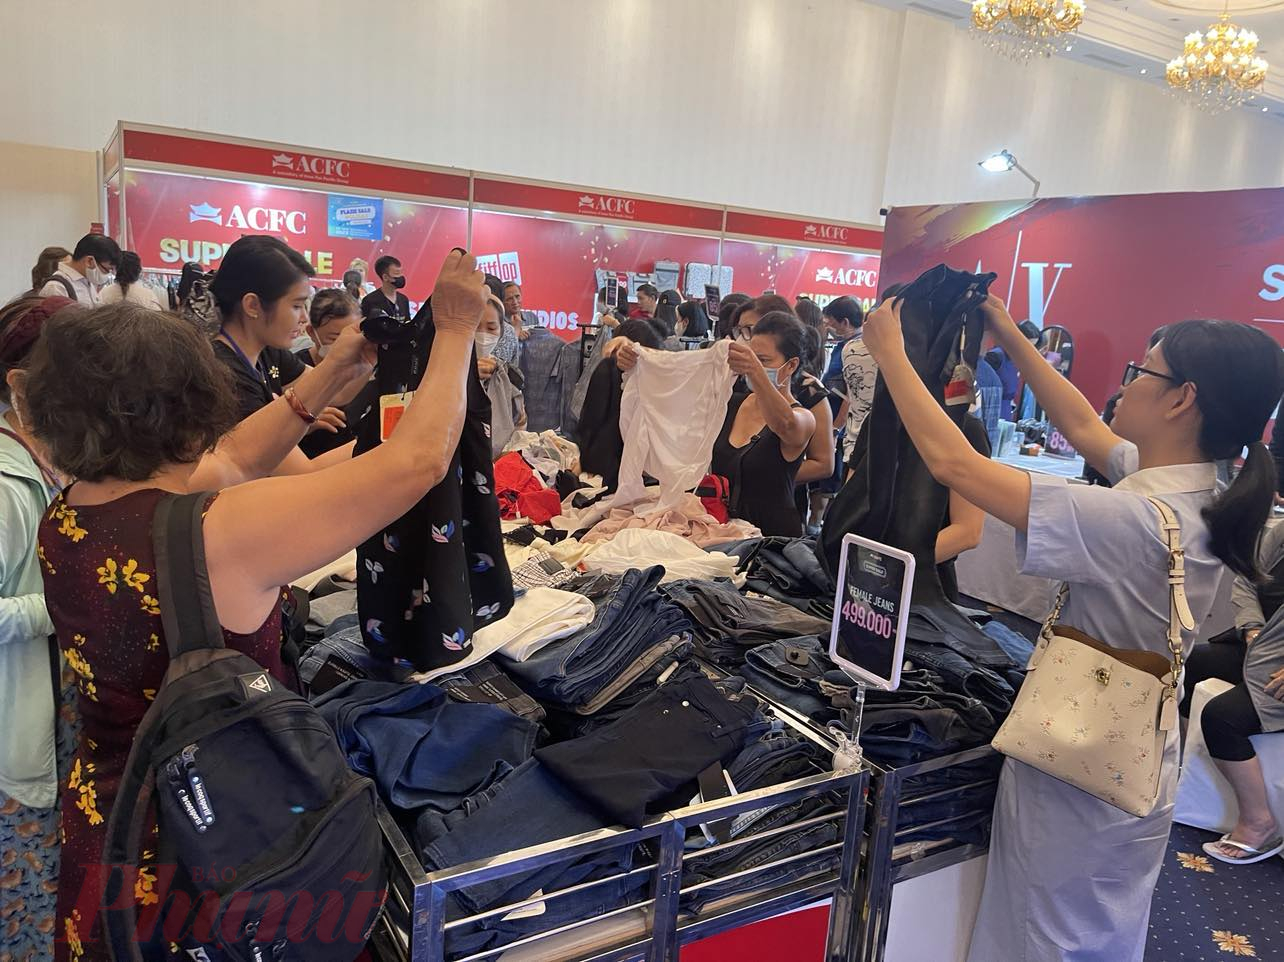 Gian hàng bán quần áo giảm giá được nhiều chị em chọn mua sản phẩm có giá chỉ từ 499.000 đồng - Ảnh: Nguyễn Cẩm